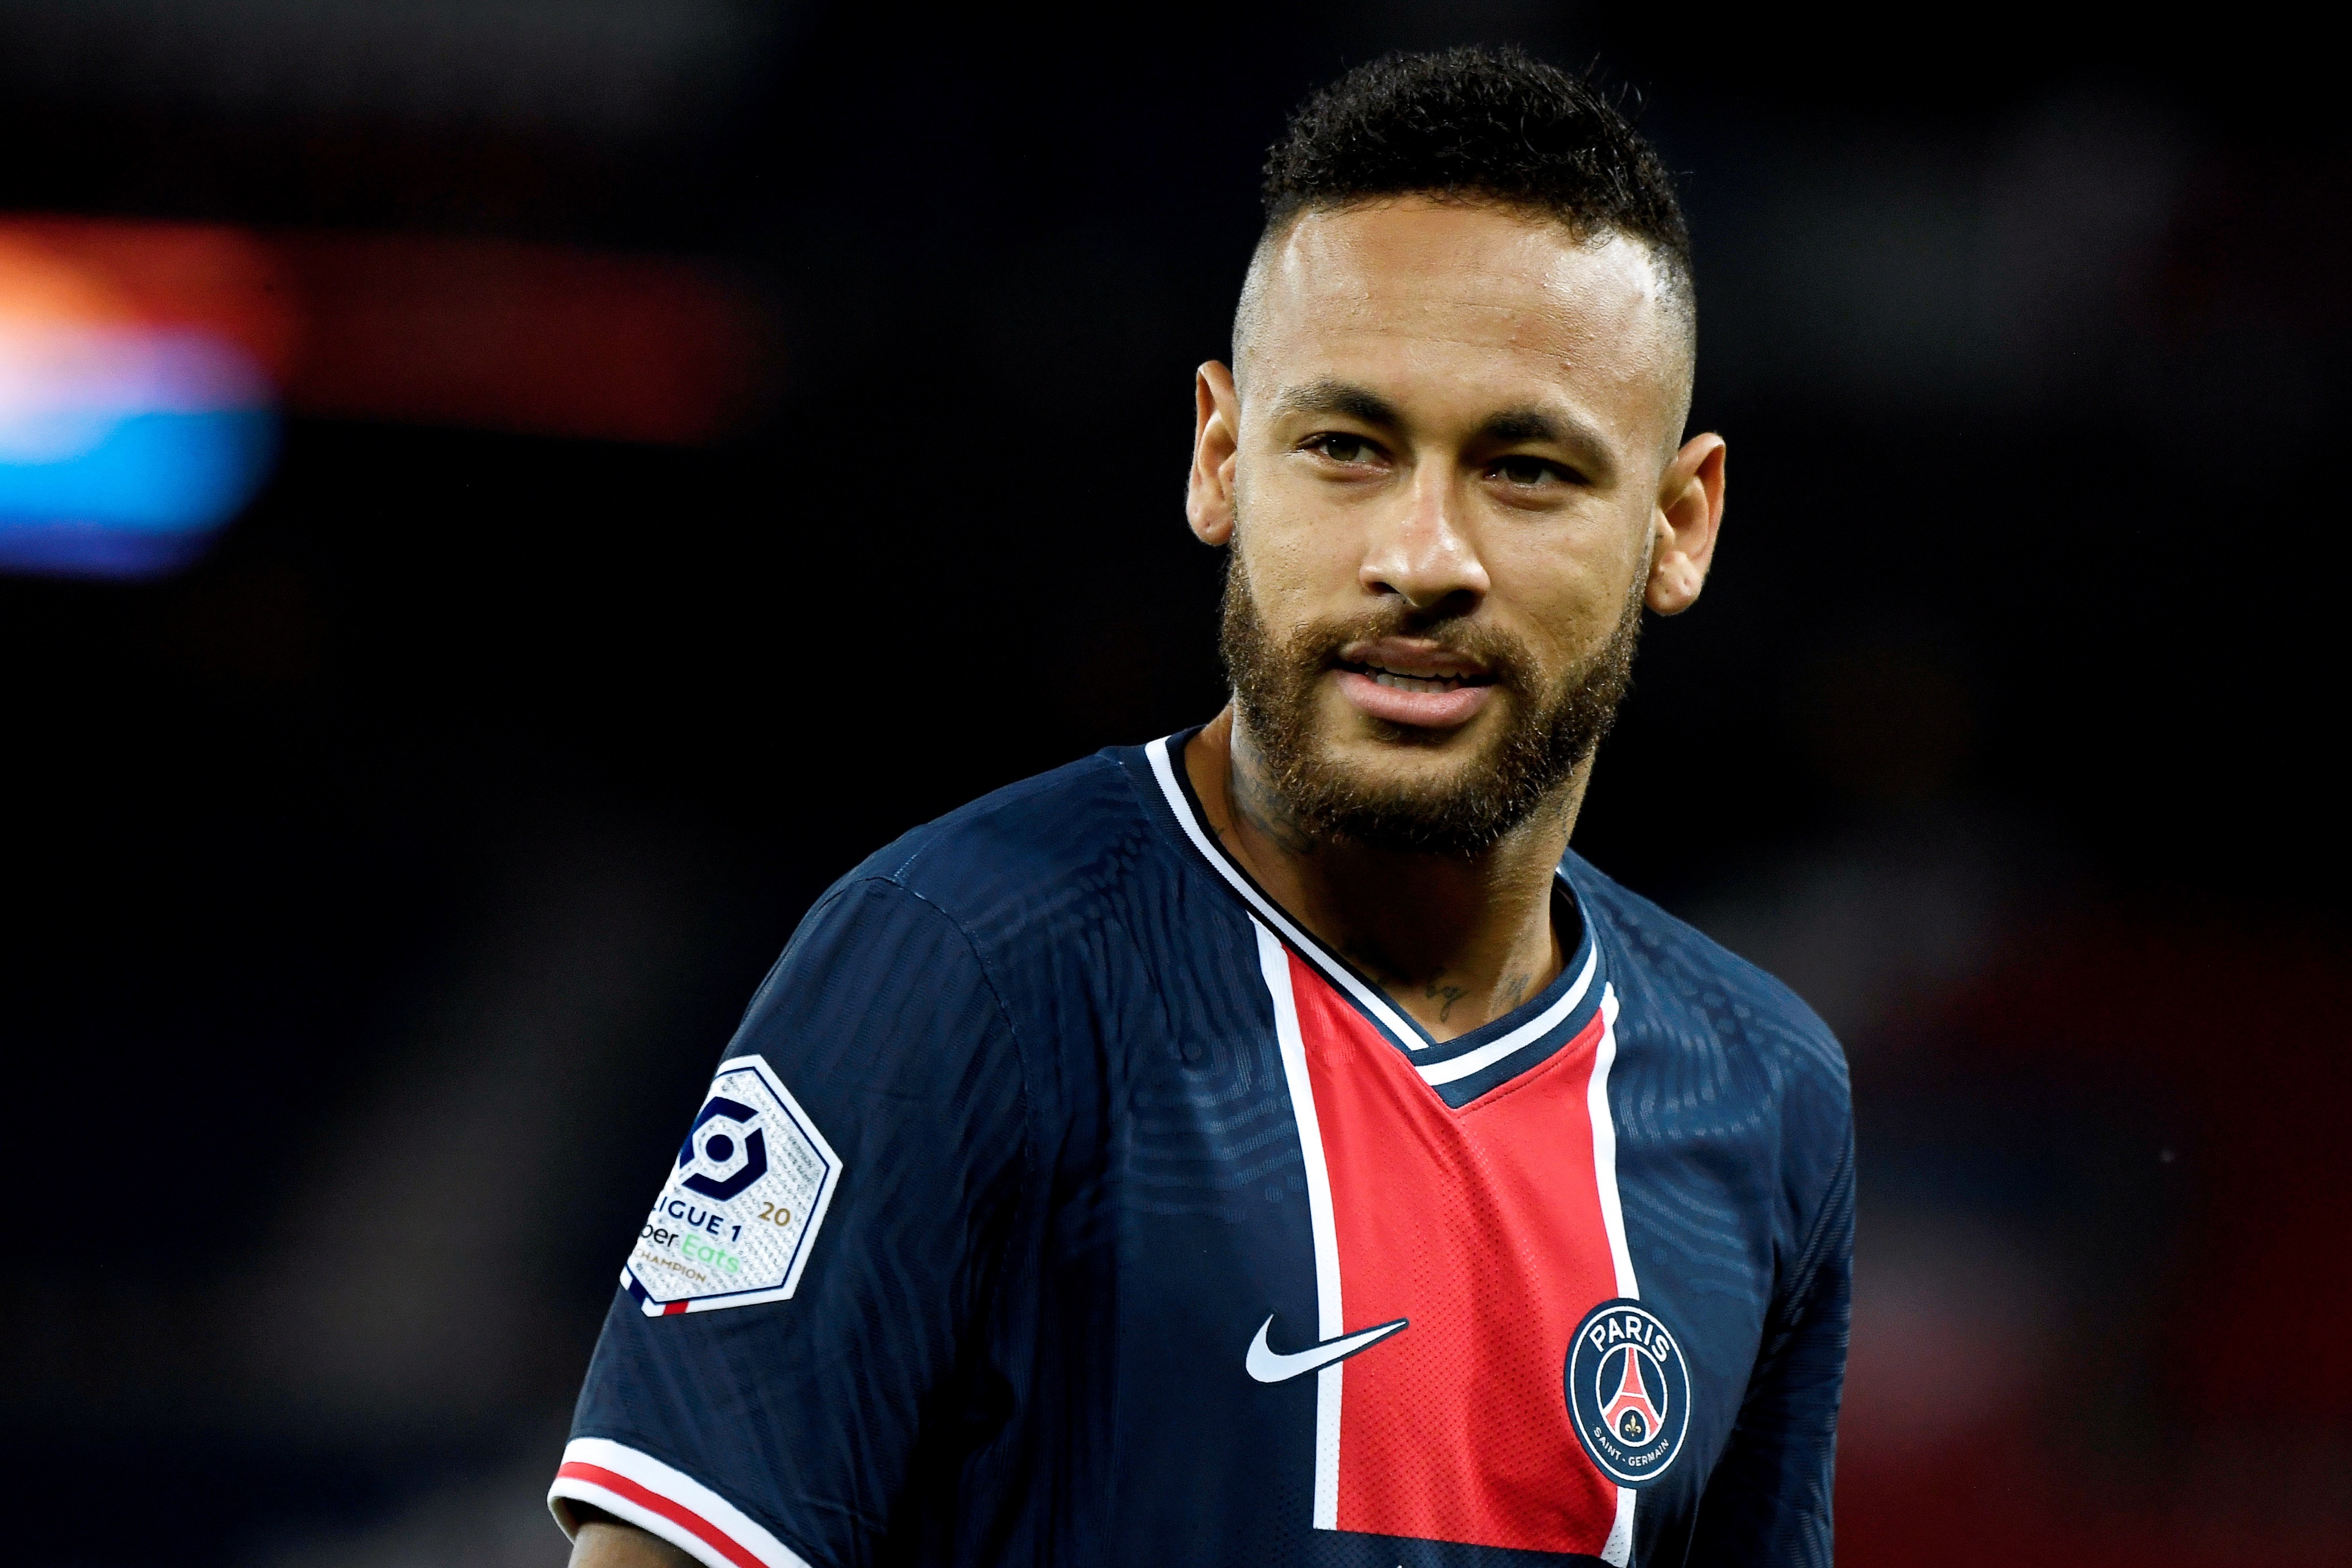 Nuevo capítulo en el escándalo por racismo en Francia: la acusación contra Neymar de un futbolista del Marsella